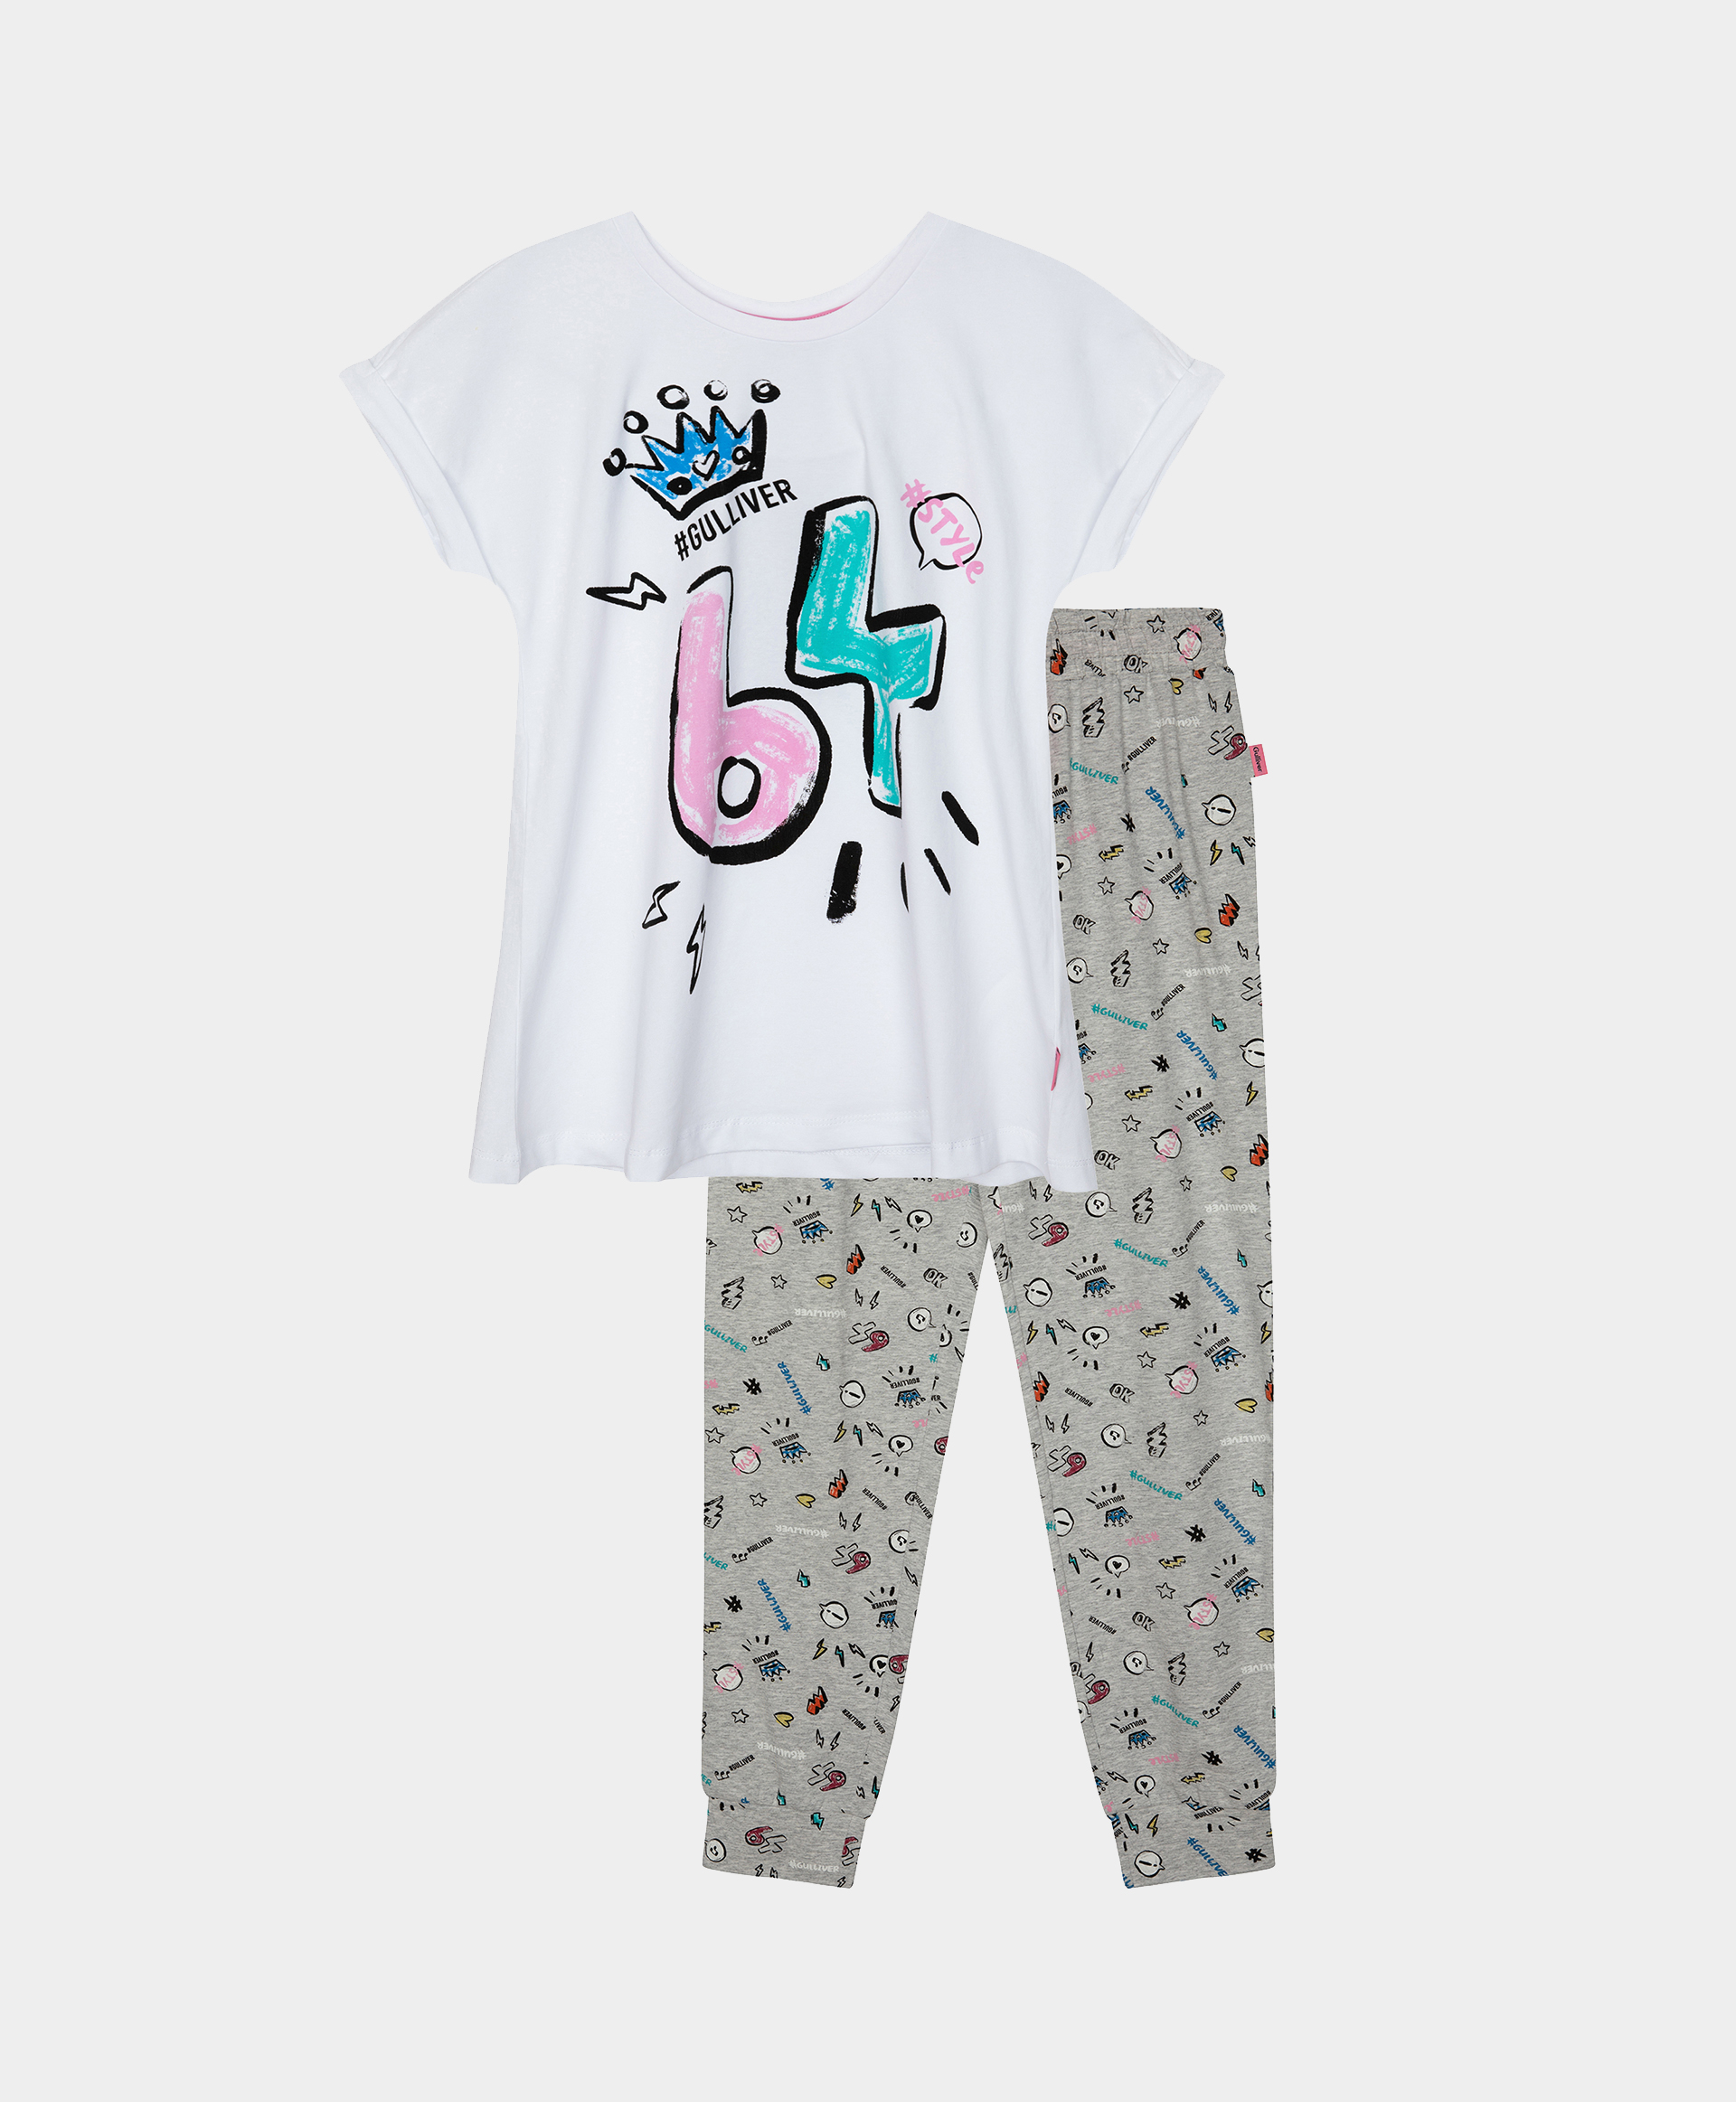 Пижама с принтом Gulliver 12100GC9701, размер 98-104, цвет мультицвет